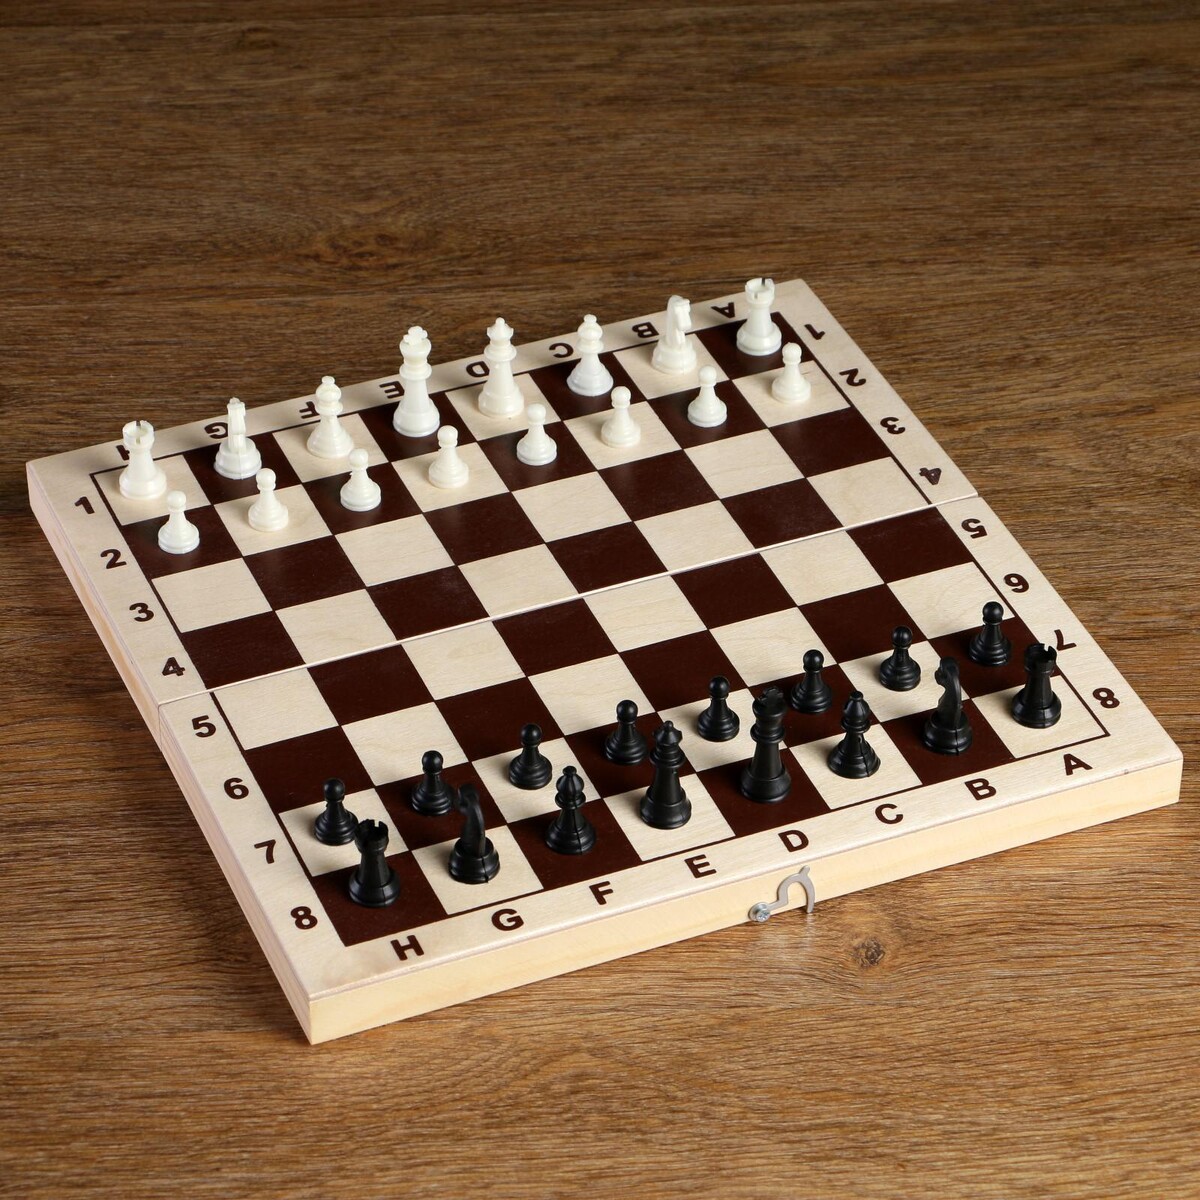 Шахматные фигуры, пластик, король h-4.2 см, пешка h-2 см имельда и король гоблинов